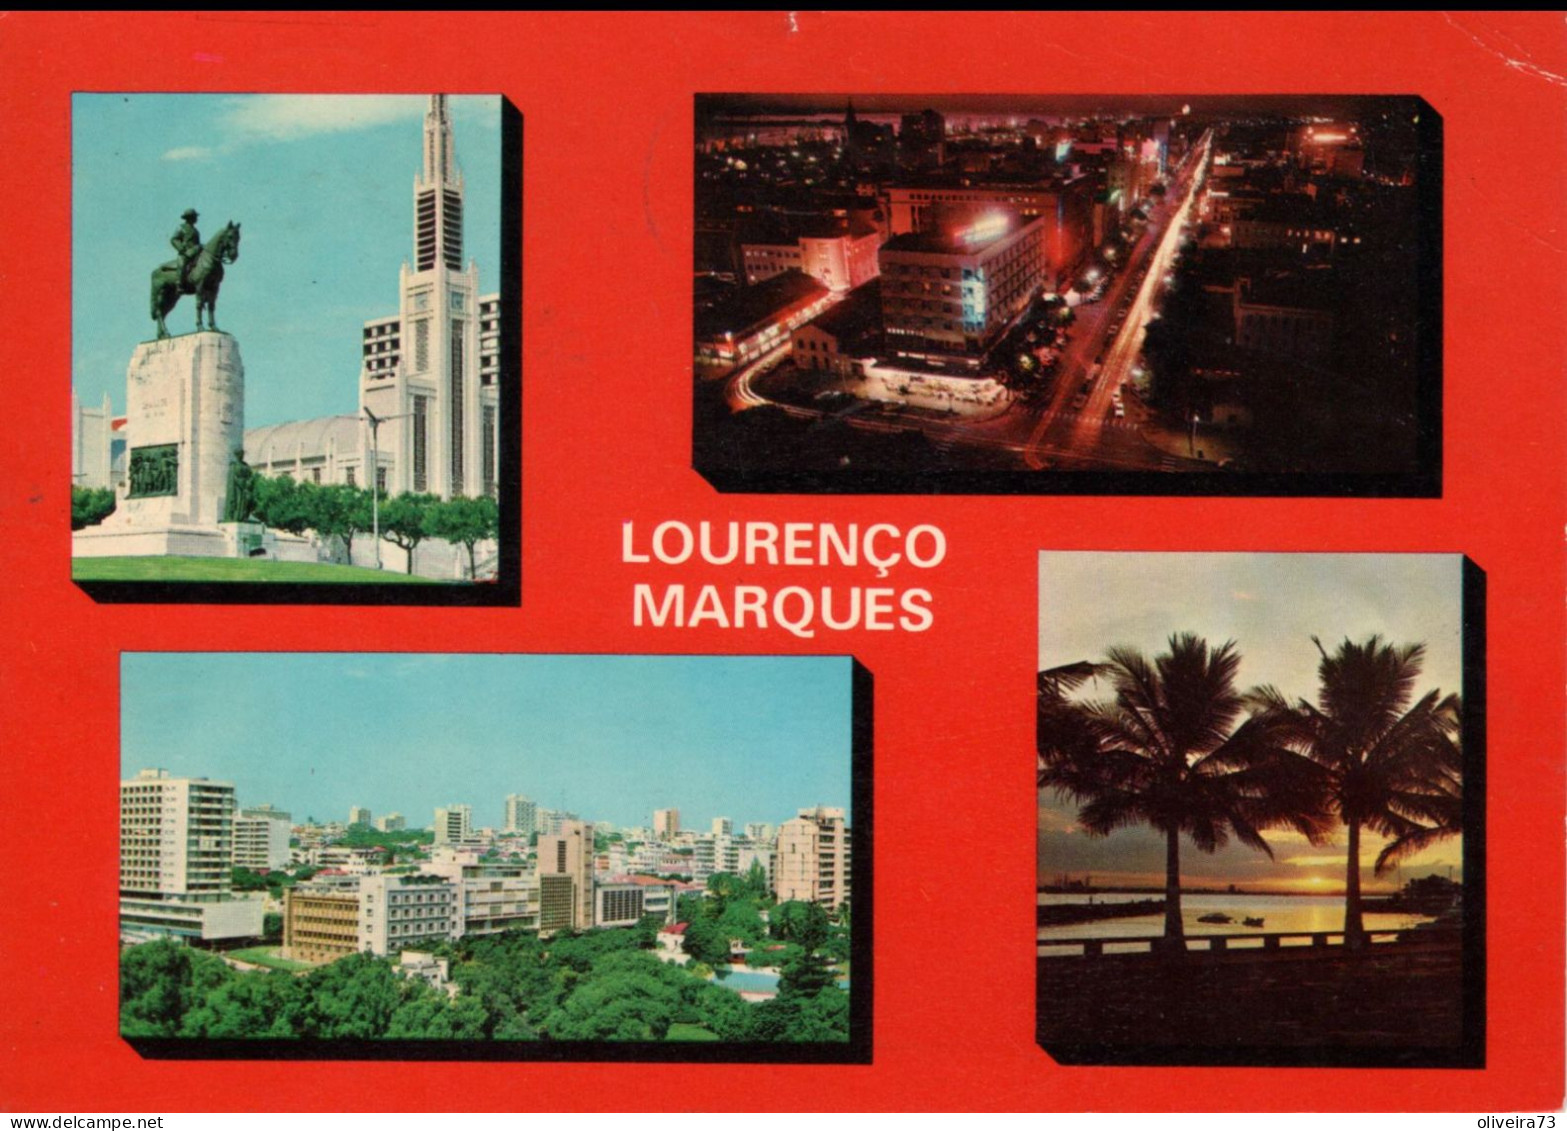 MOÇAMBIQUE - LOURENÇO MARQUES - Mozambique